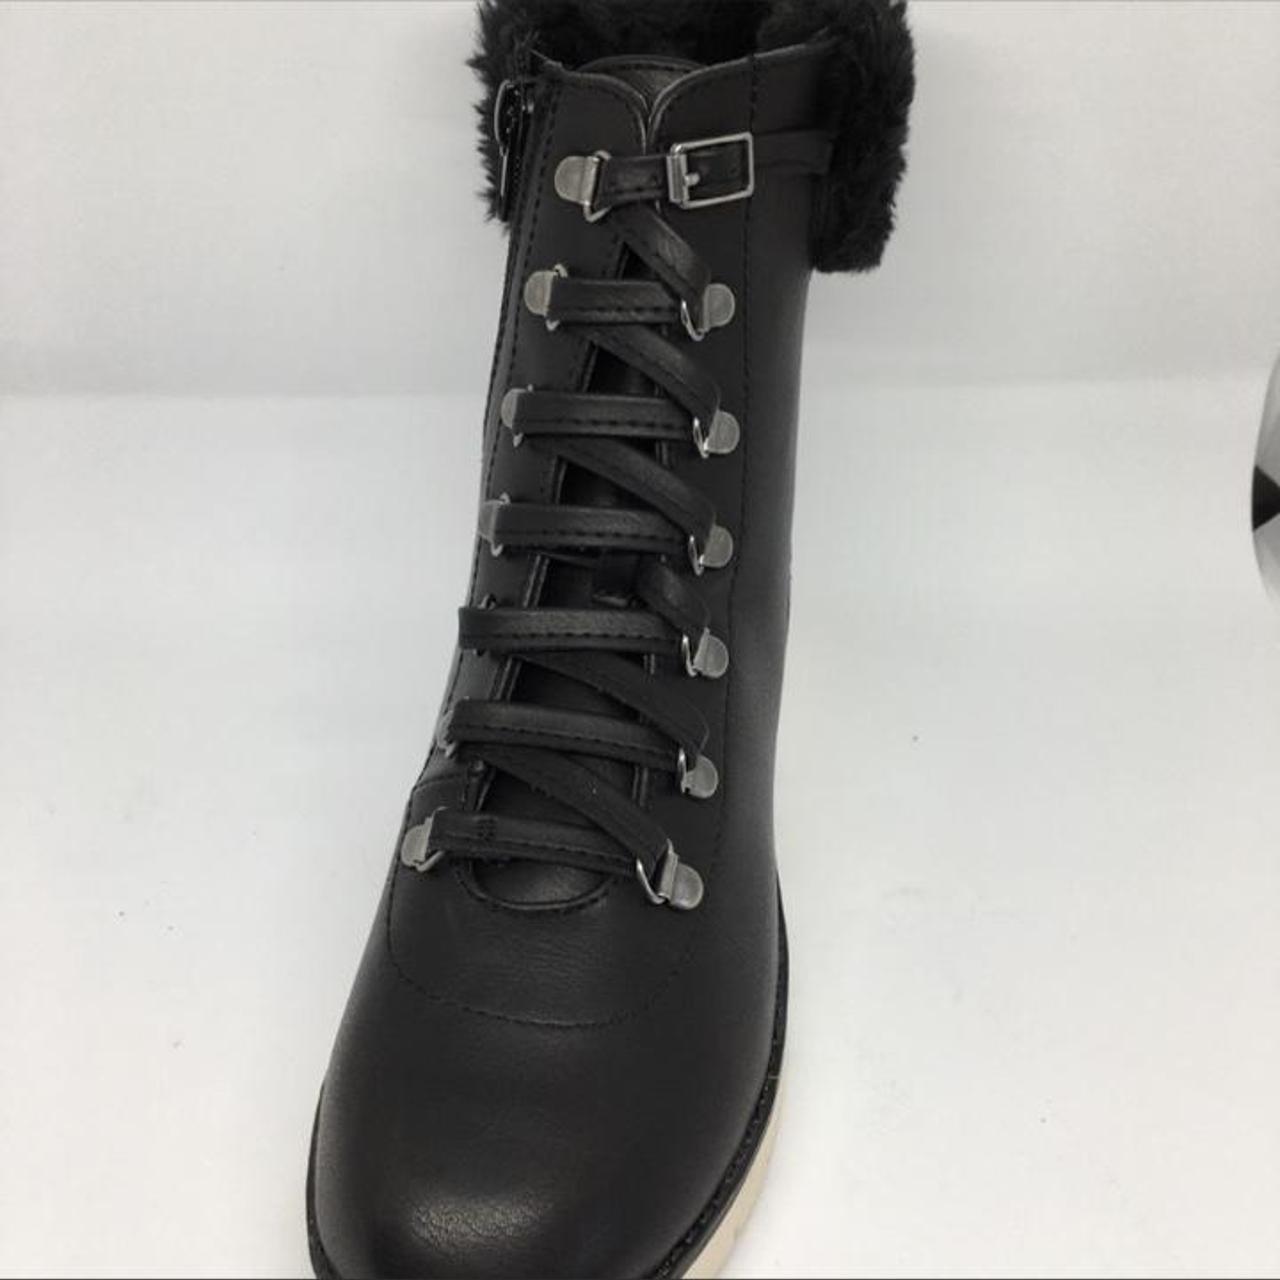 Product Image 3 - 6.5 Mia mikayla combat boots